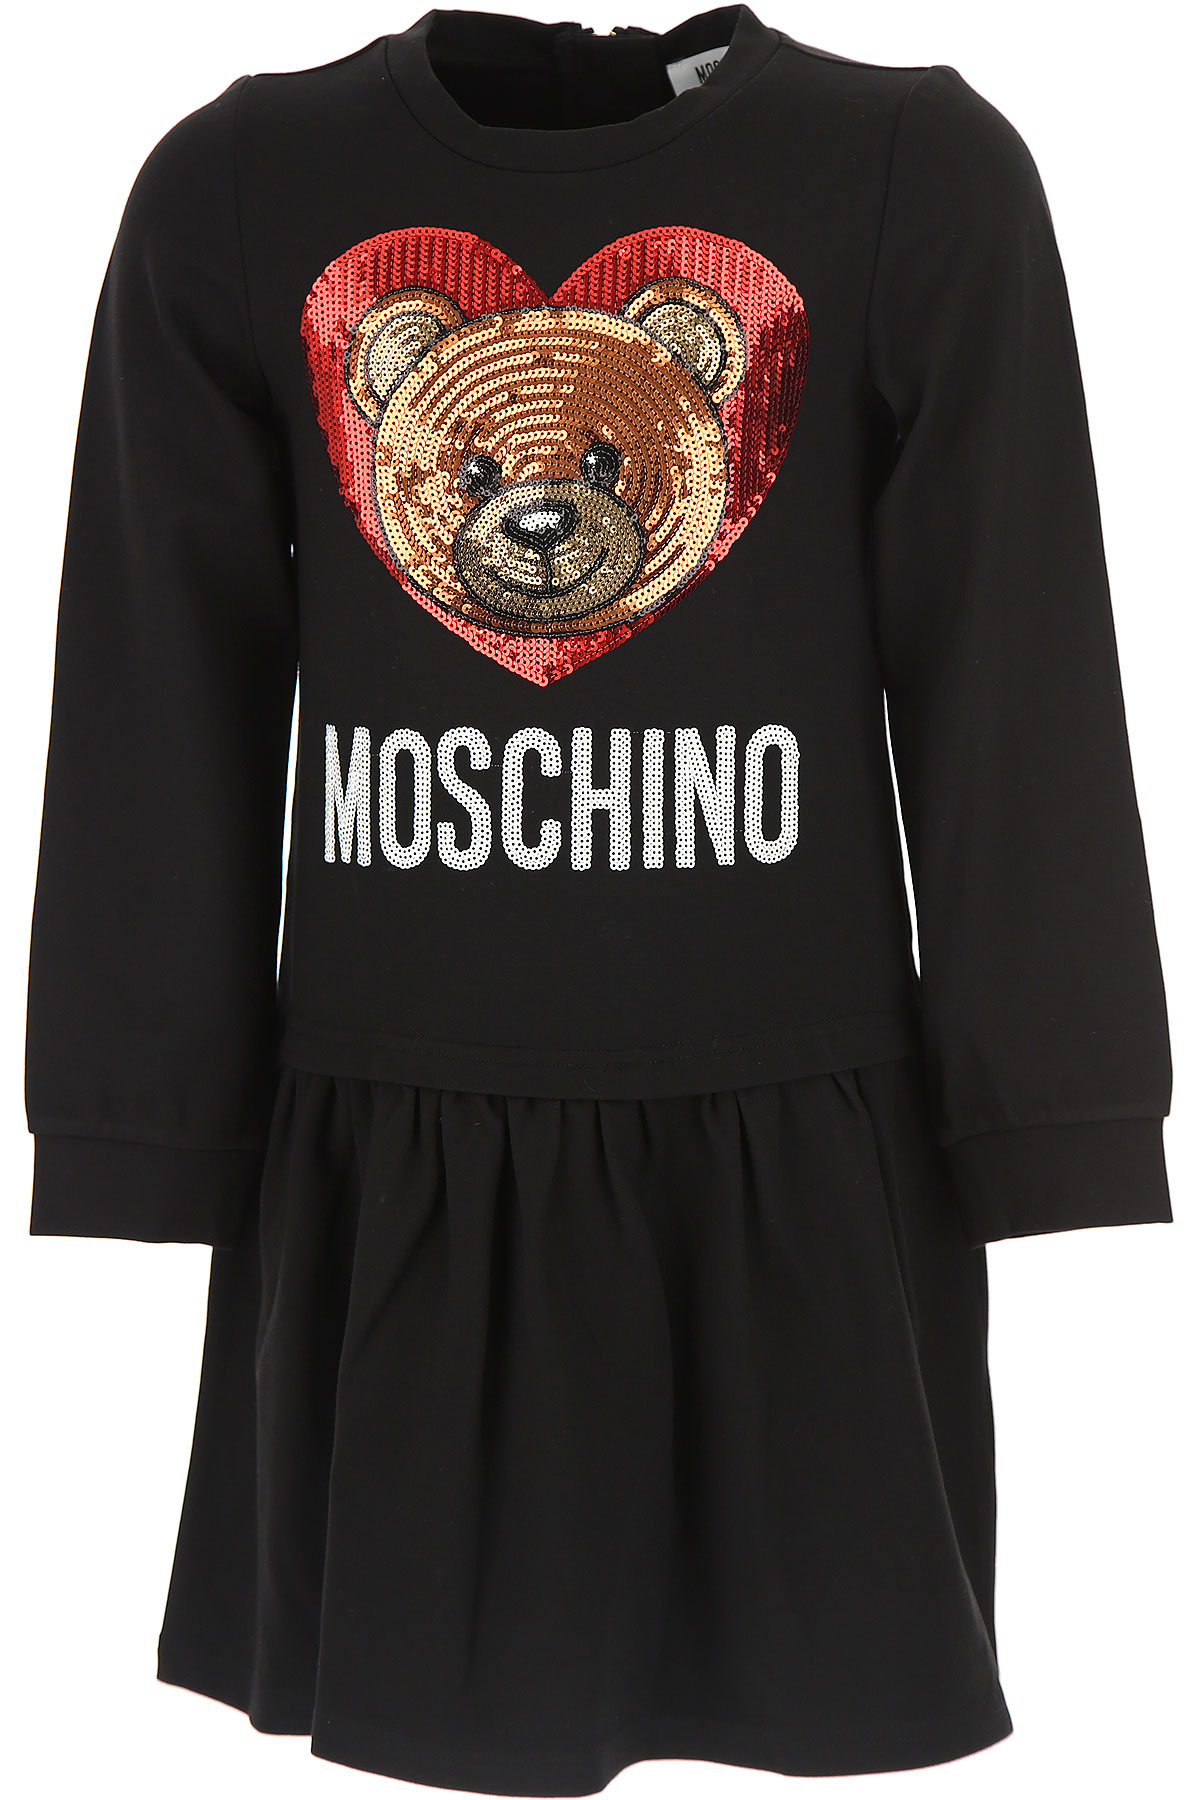 Москино одежда. Moschino одежда. Платье Moschino. Moschino одежда для девочек. Moschino Москино одежда.